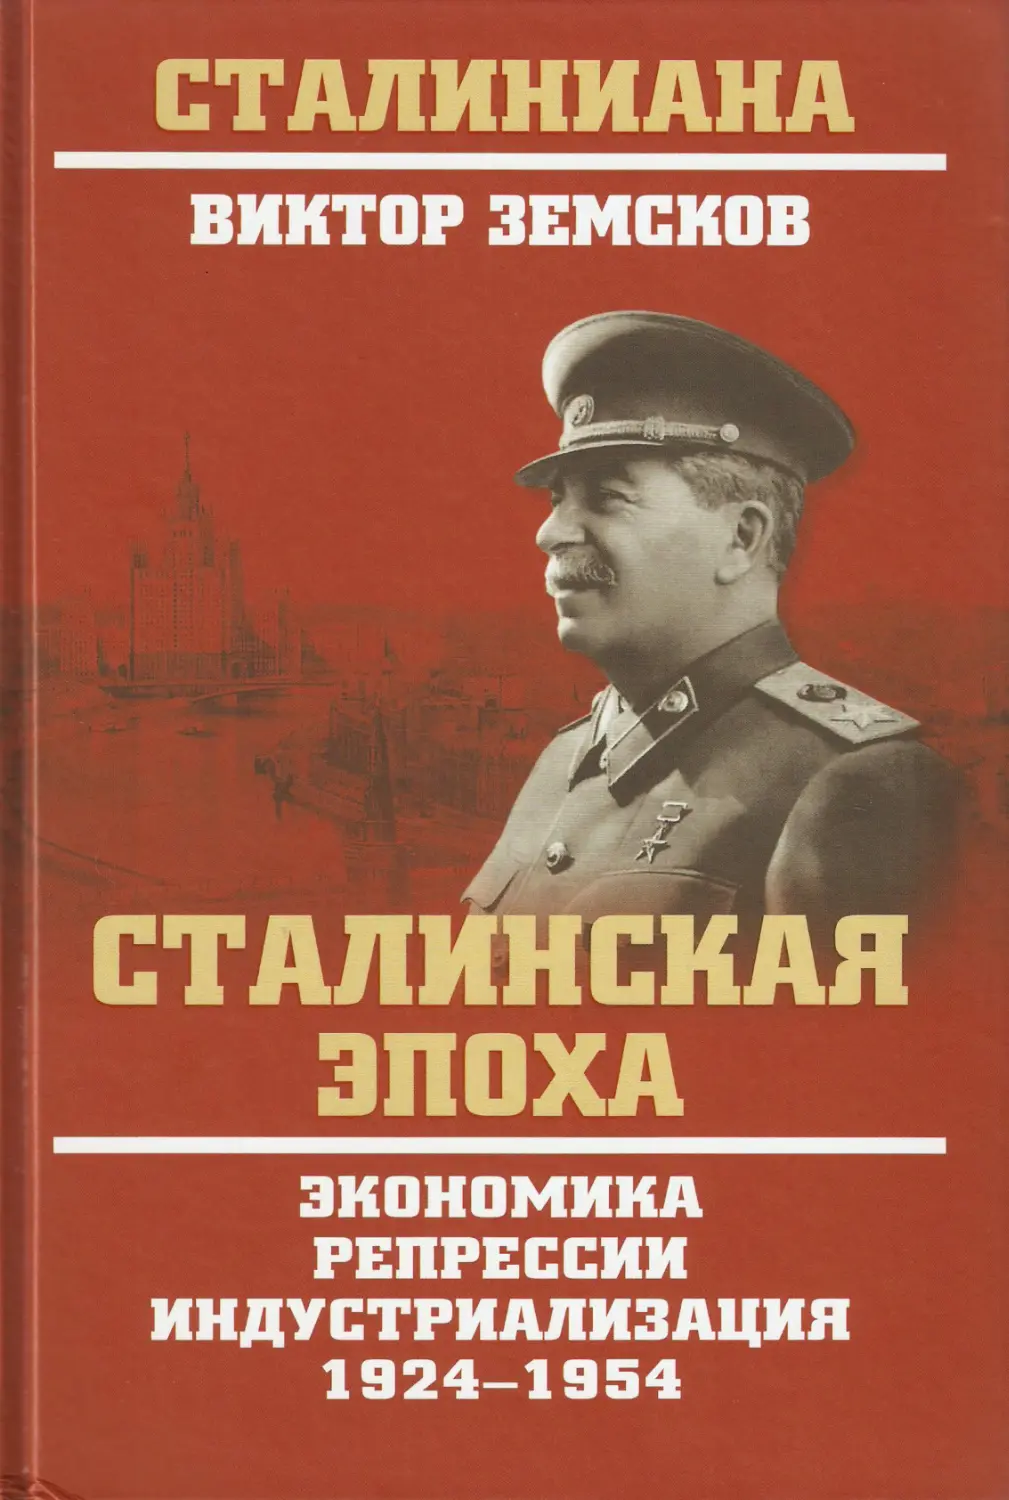 Земсков В.Н. - Сталинская эпоха